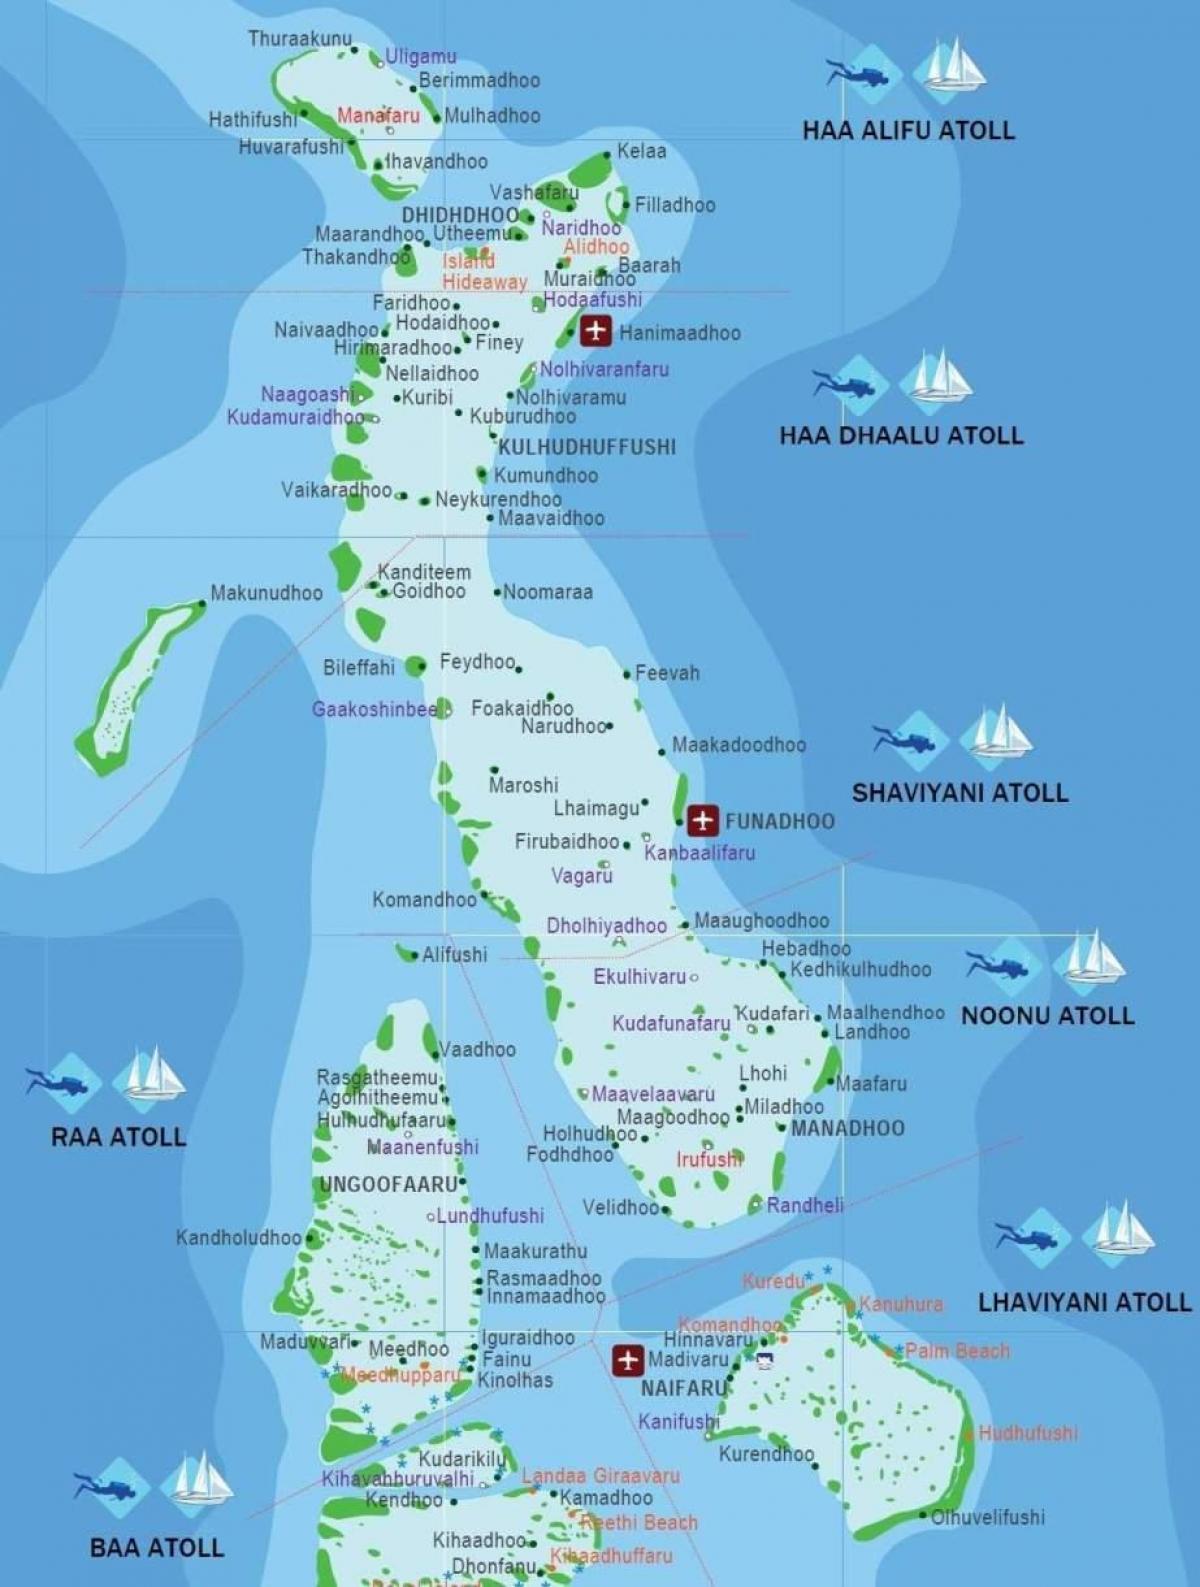 osoa mapa maldives